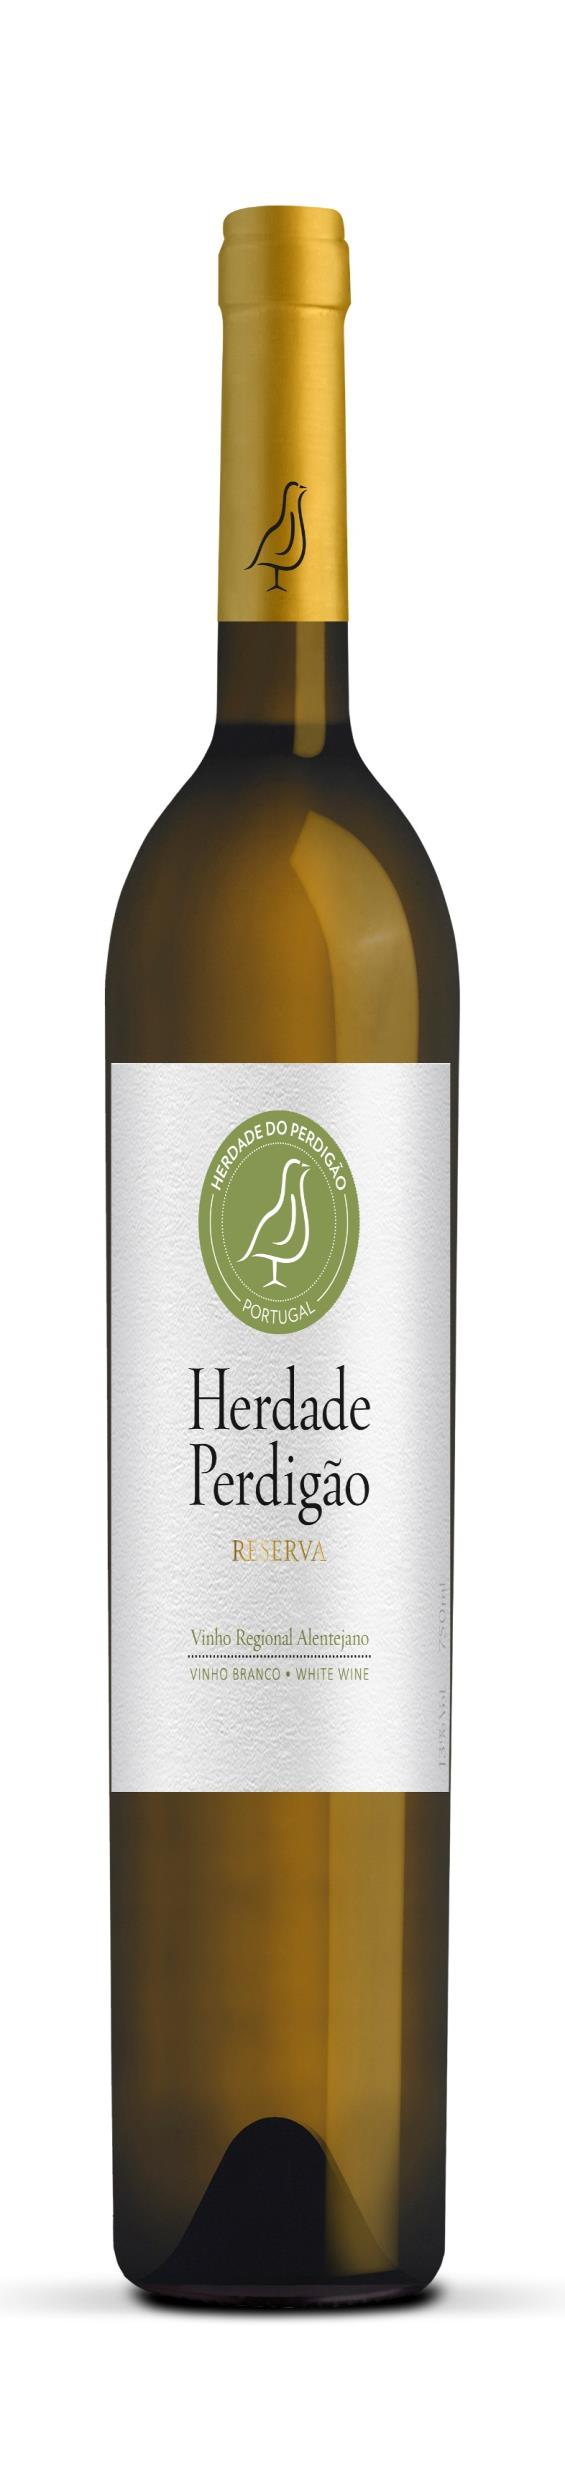 Exklusives Probierpaket Top-Weissweine Portugal plus O White Vinho 10 Weissweinpakete 1 Years | Probierpakete Port 